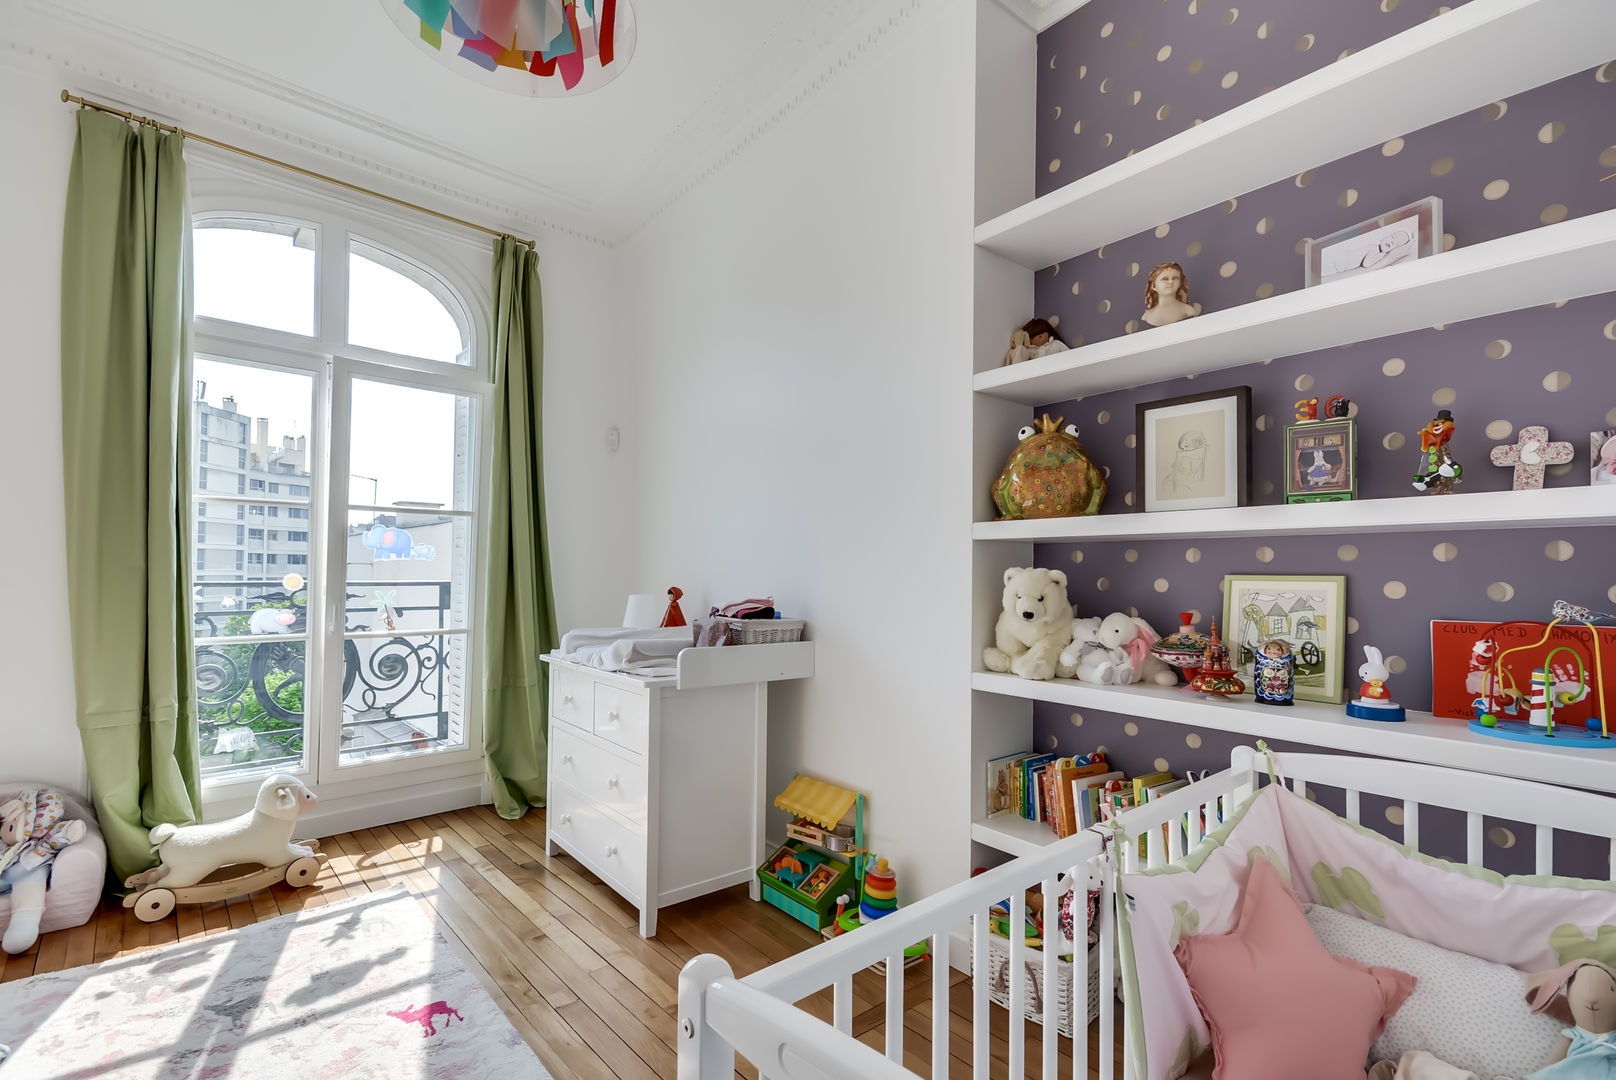 Un appartement haussmanien revisité - Paris 16e, ATELIER FB ATELIER FB ห้องนอนเด็ก